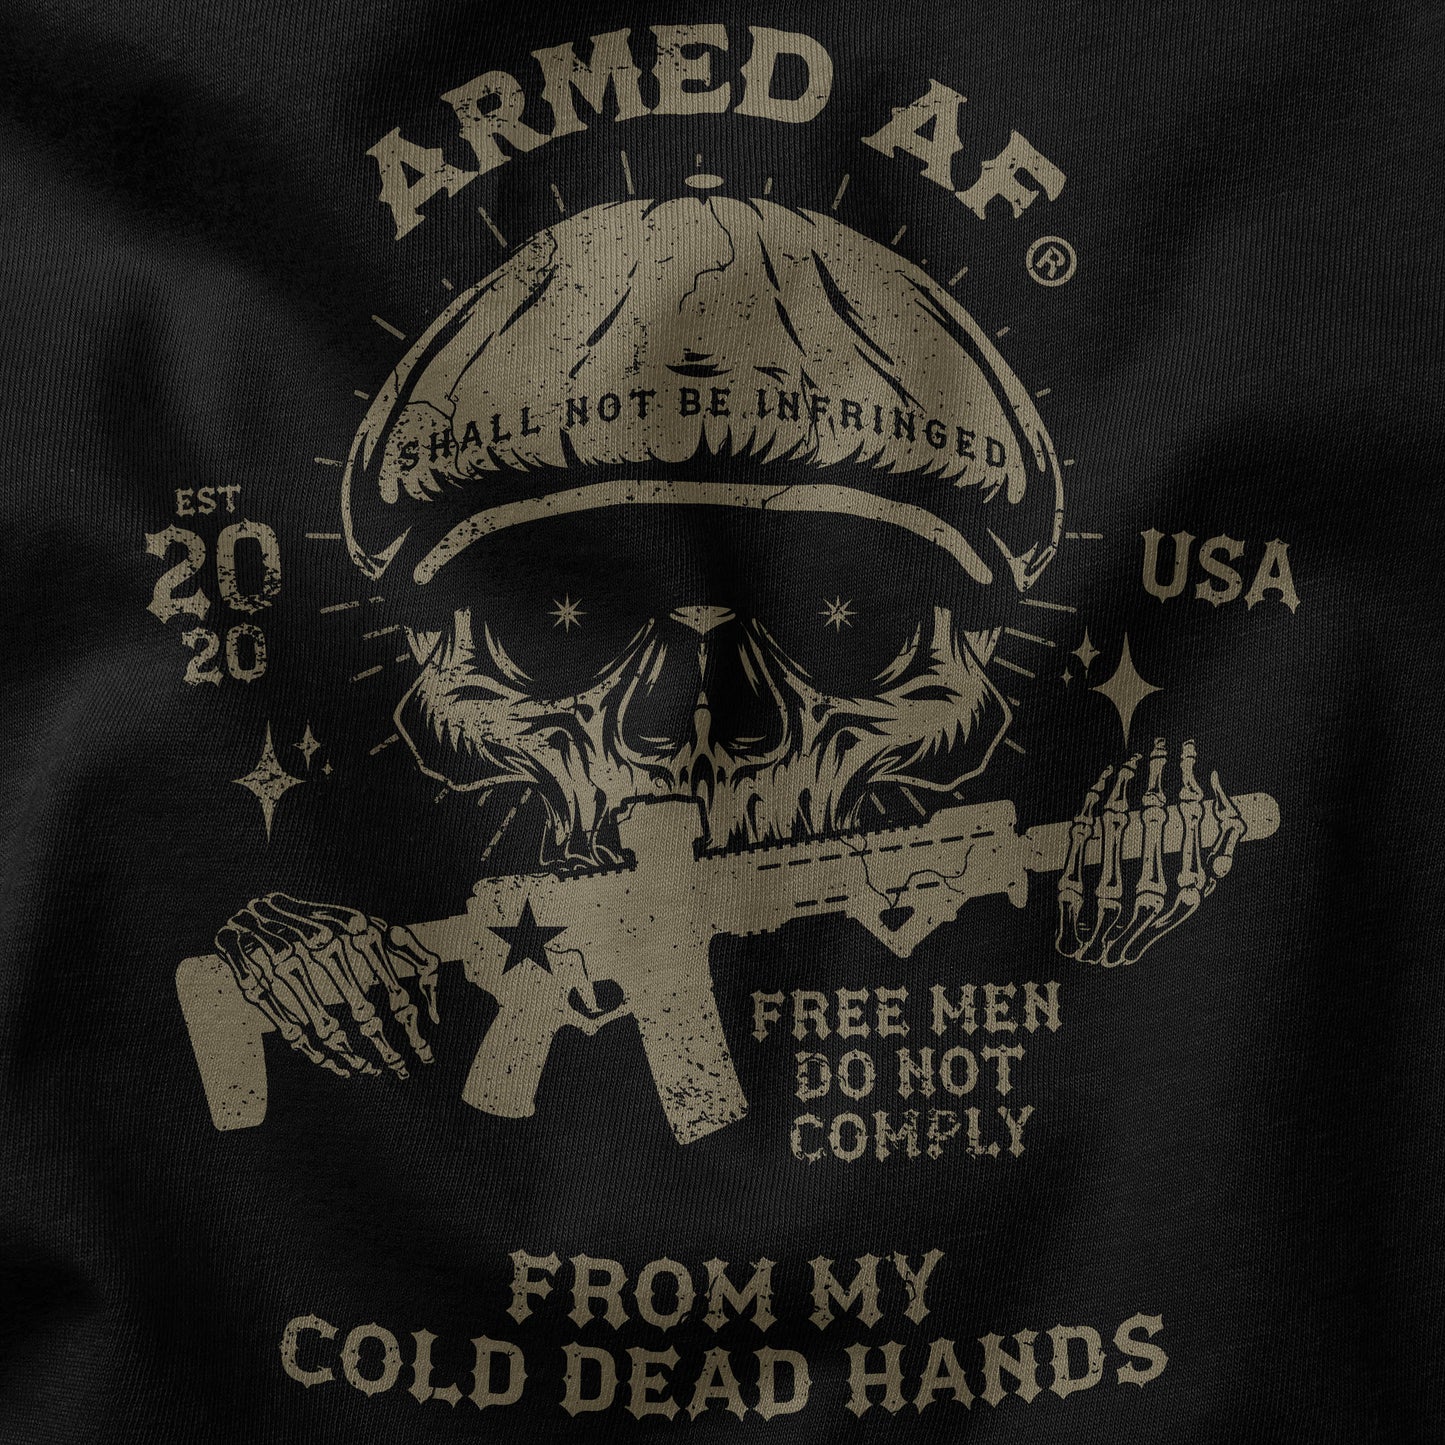 Cold Dead Hands 2a tee shirt design closeup